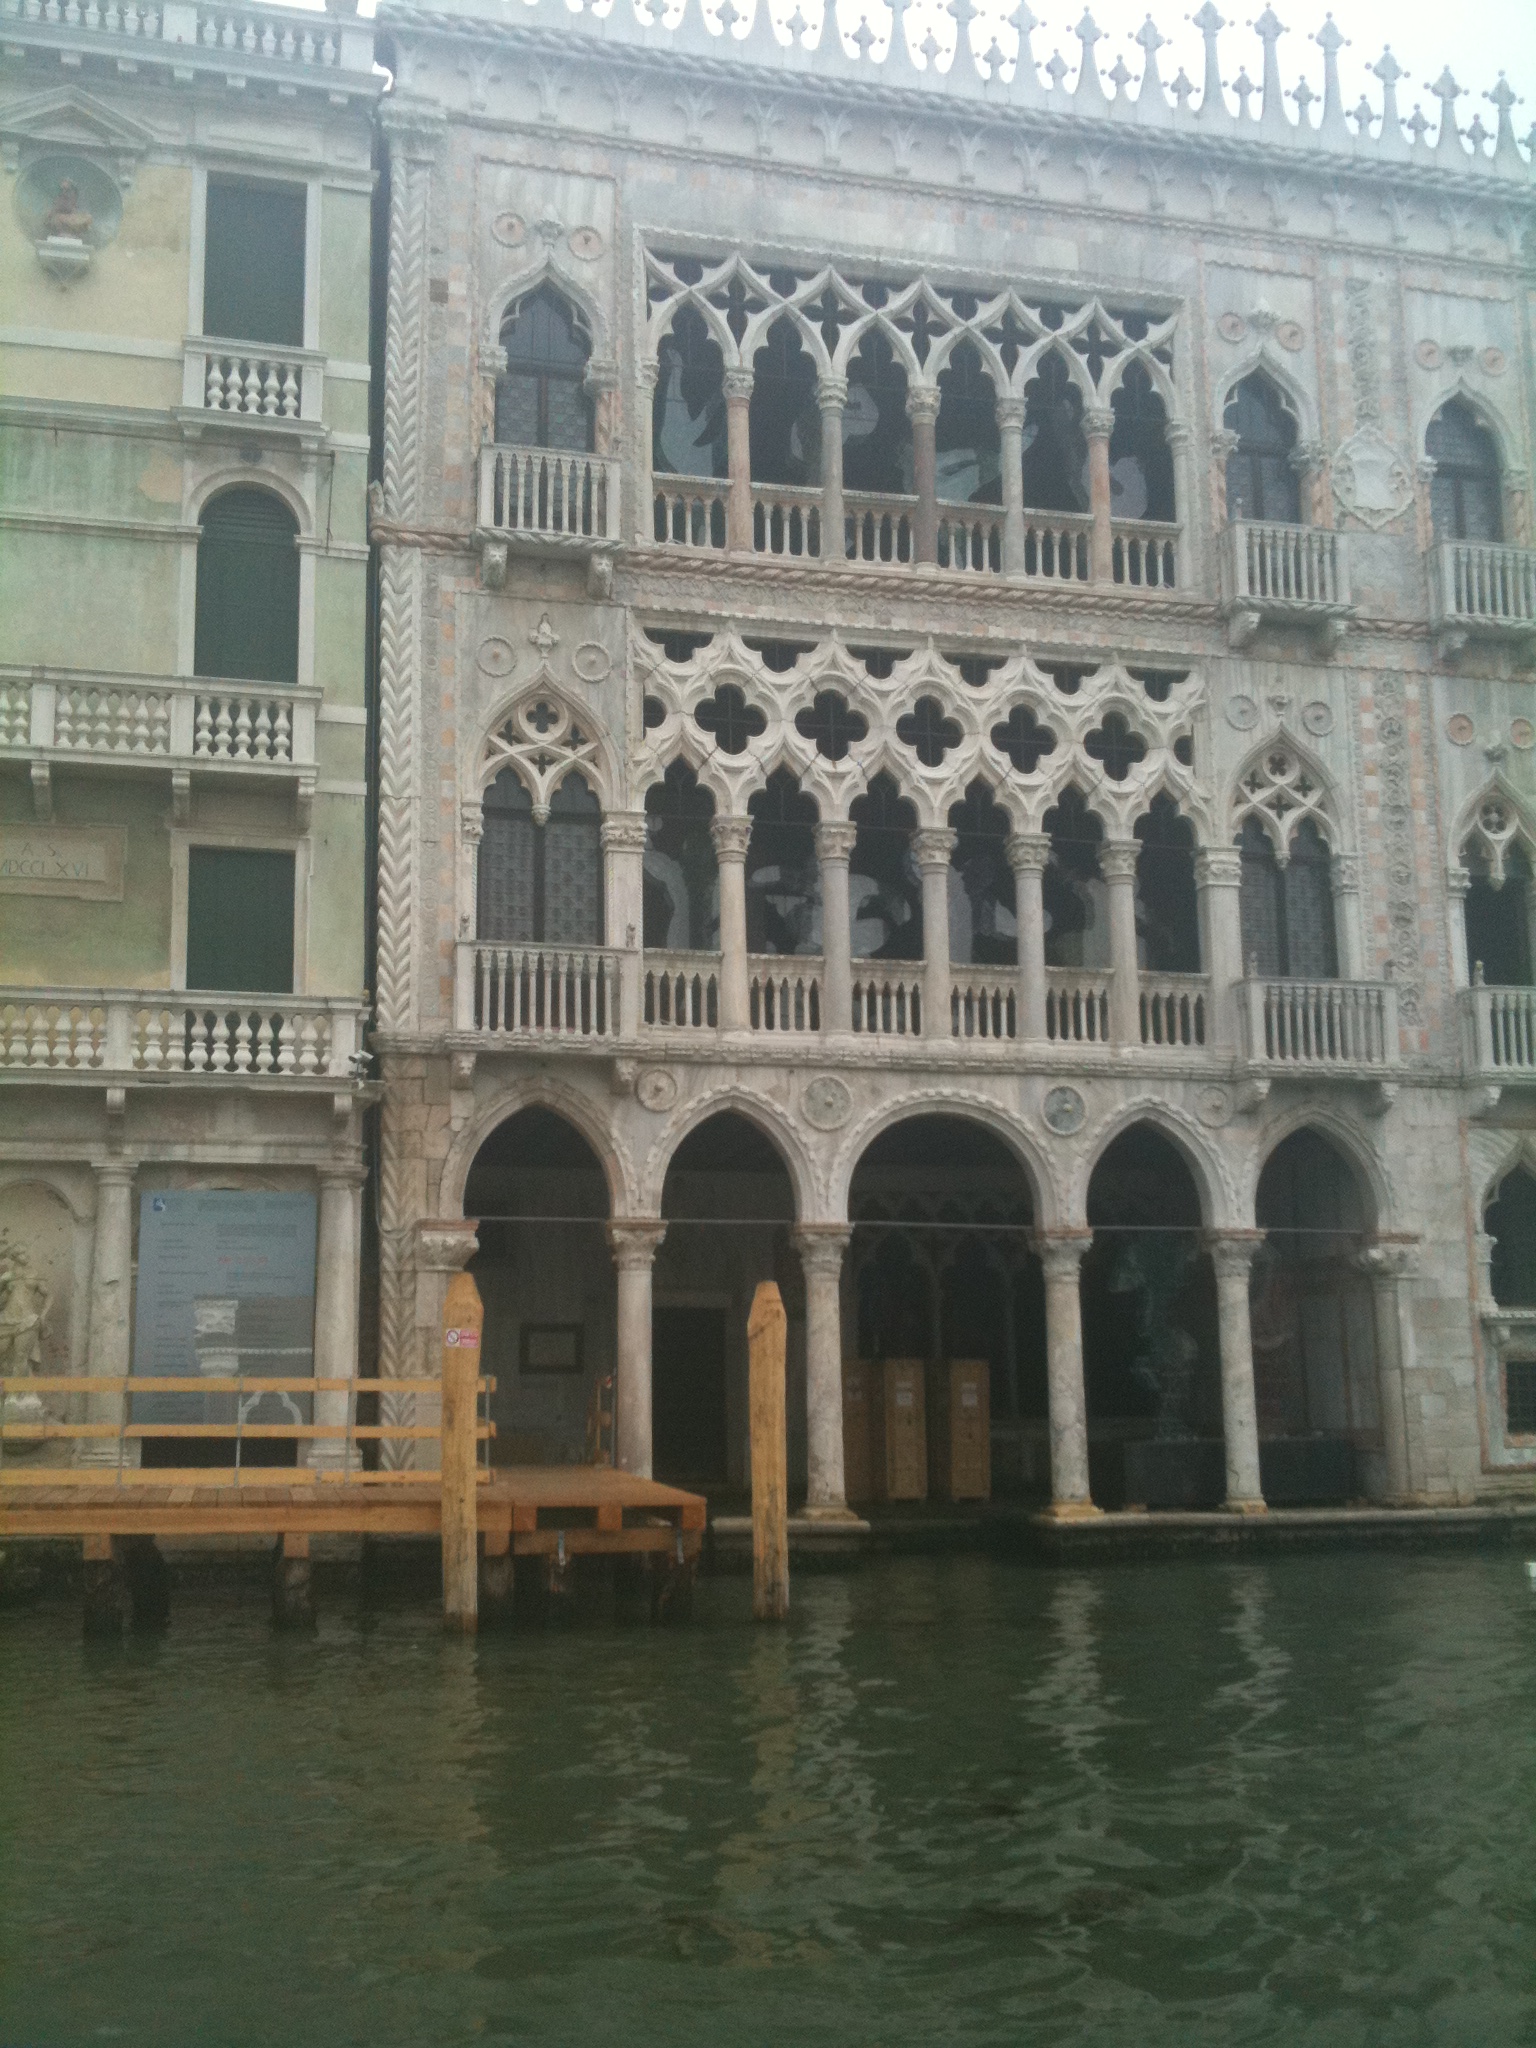 Venezia gan canal